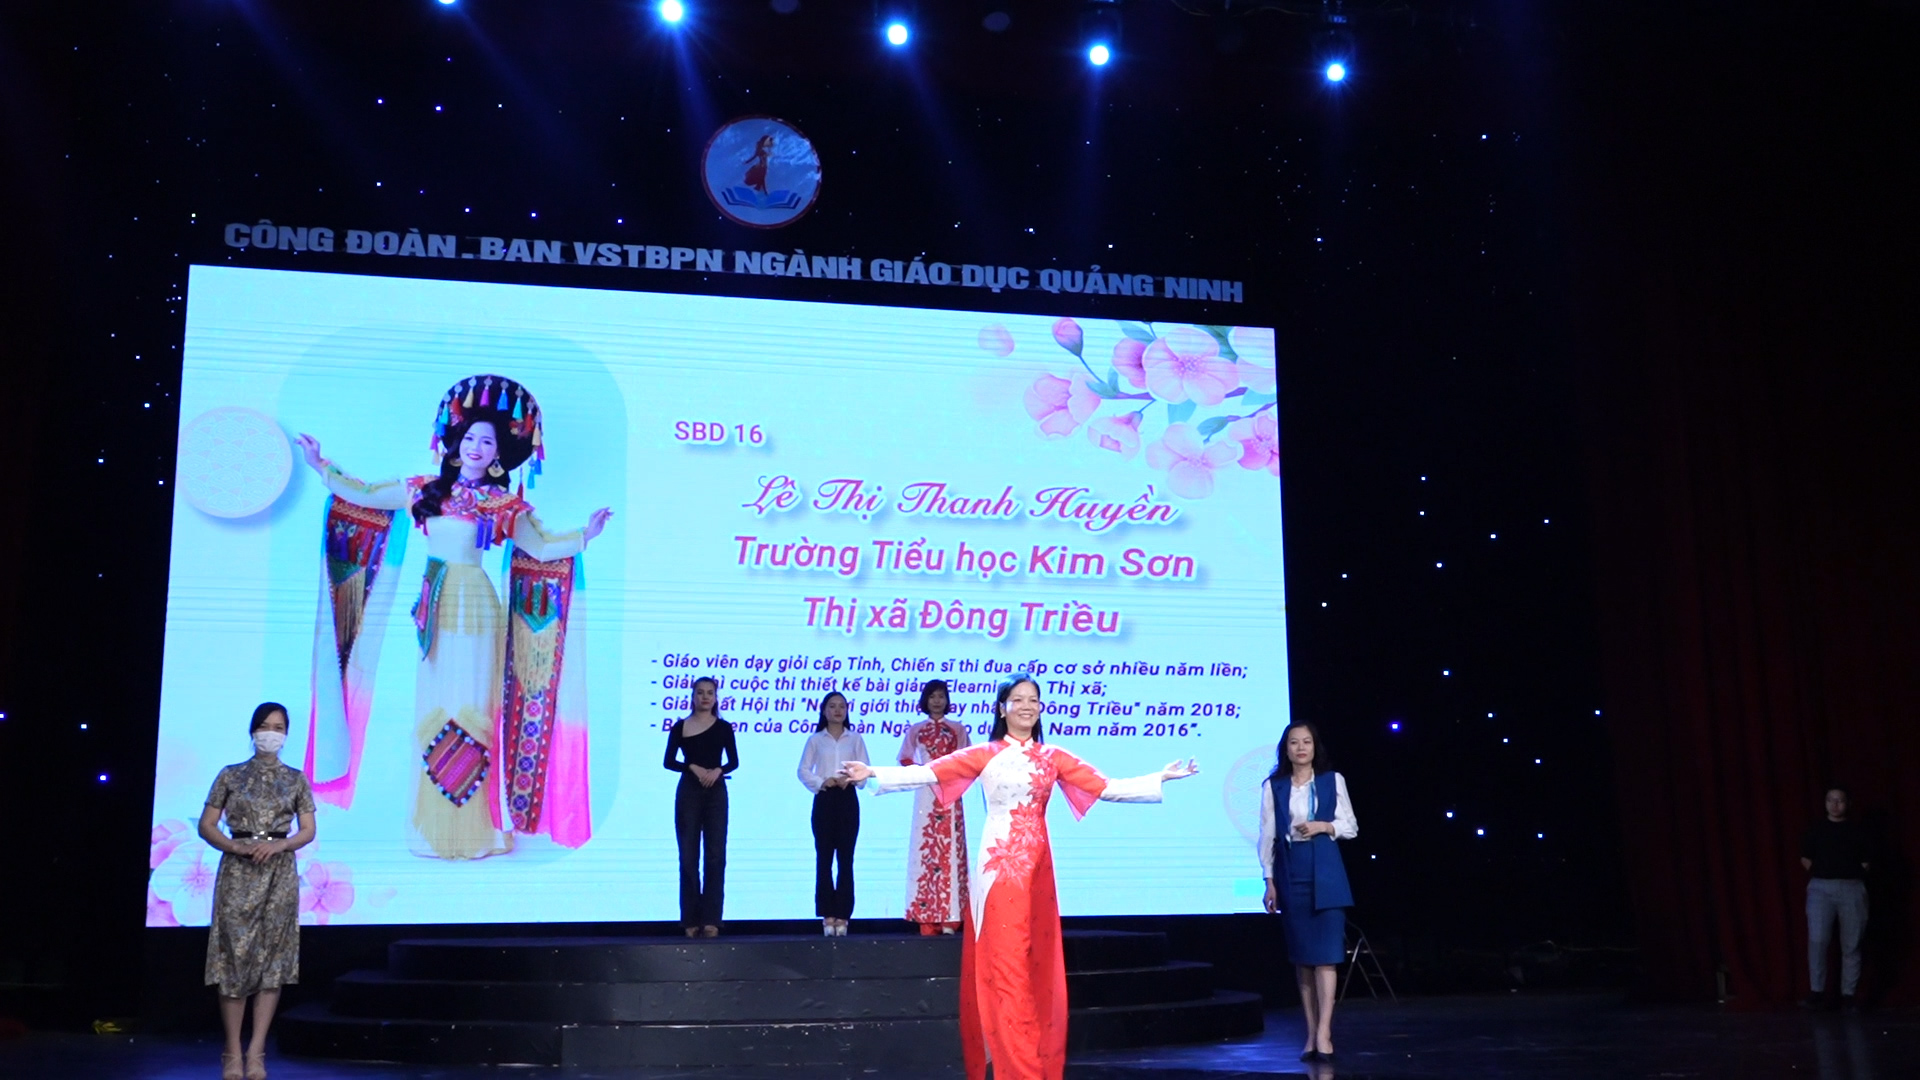 Phần trình diễn áo dài của thí sinh Lê Thị Thanh Huyền đến từ Trường Tiểu học Kim Sơn, TX Đông Triều tại chung kết hội thi cấp tỉnh.